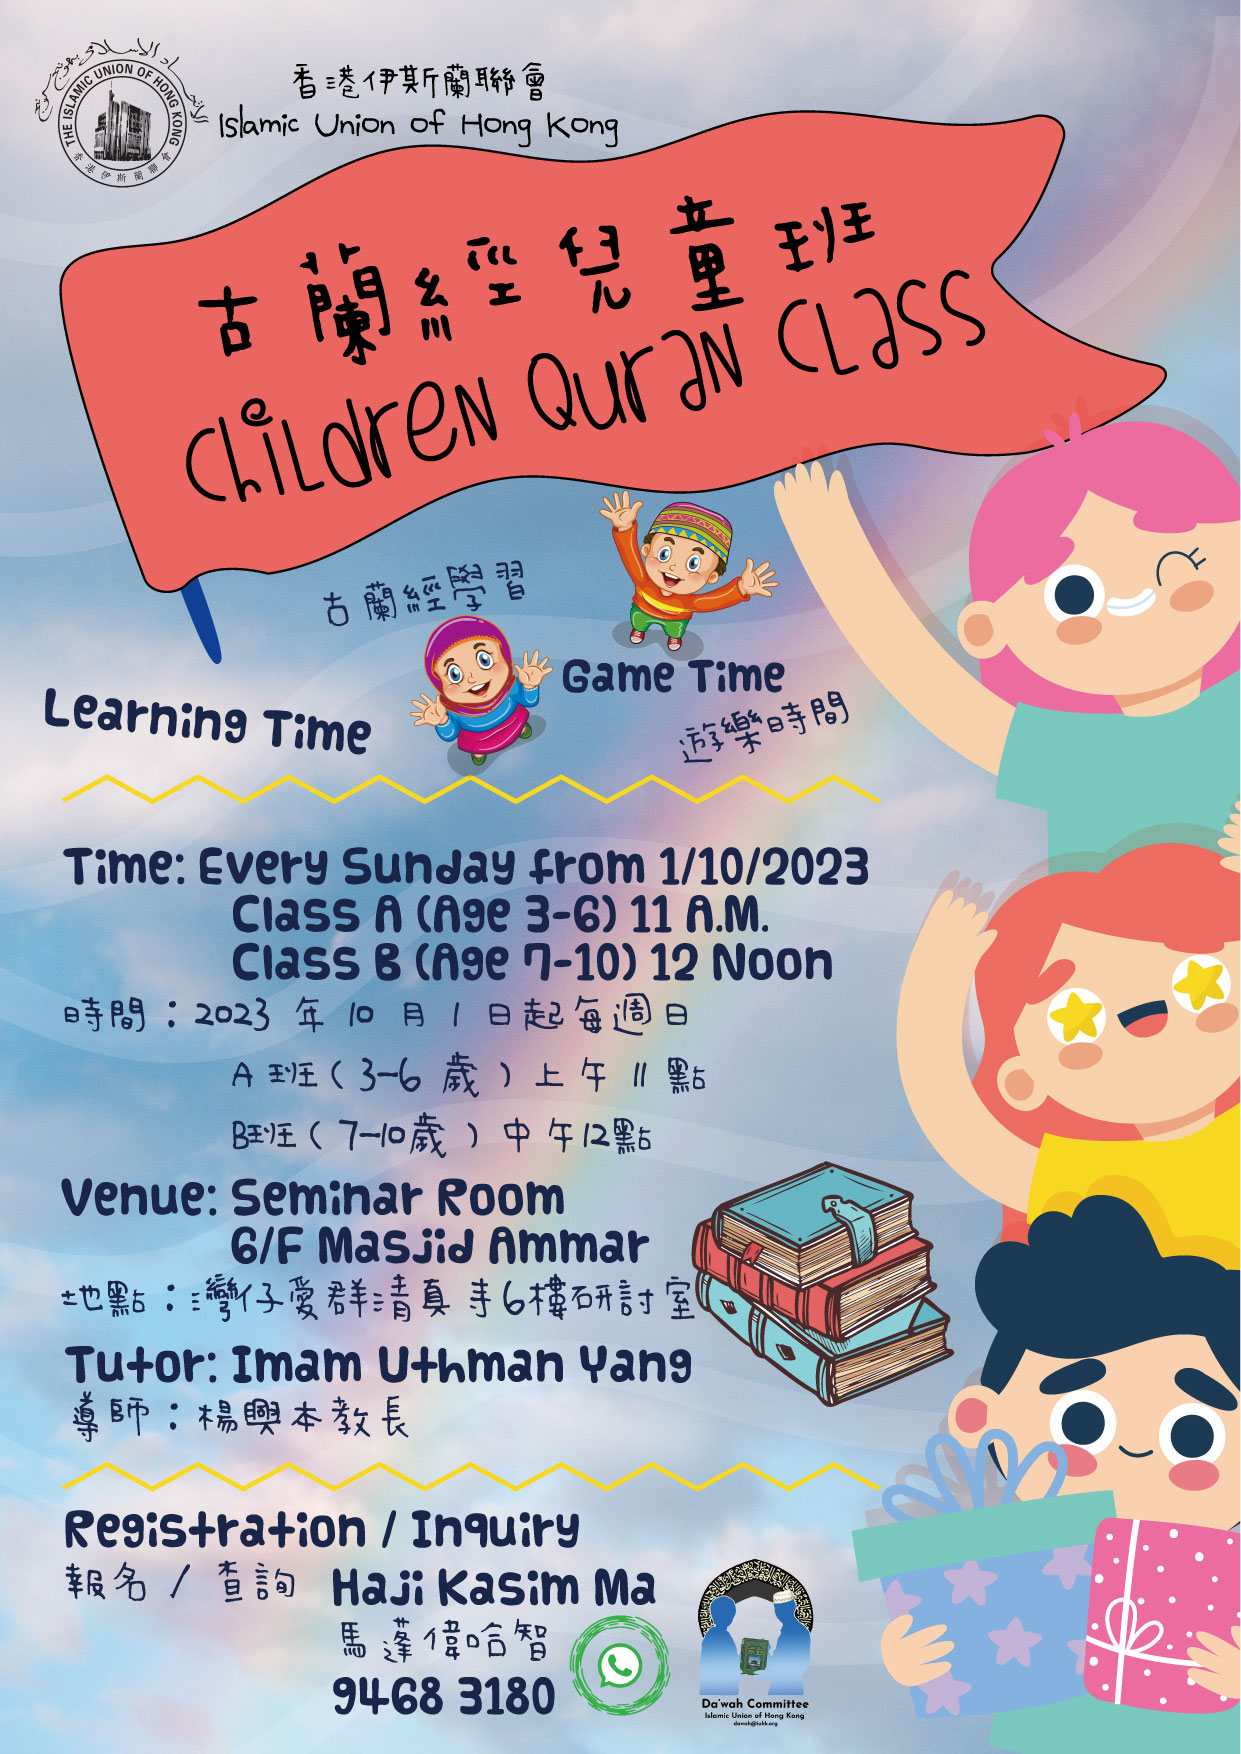 Children Quran Class